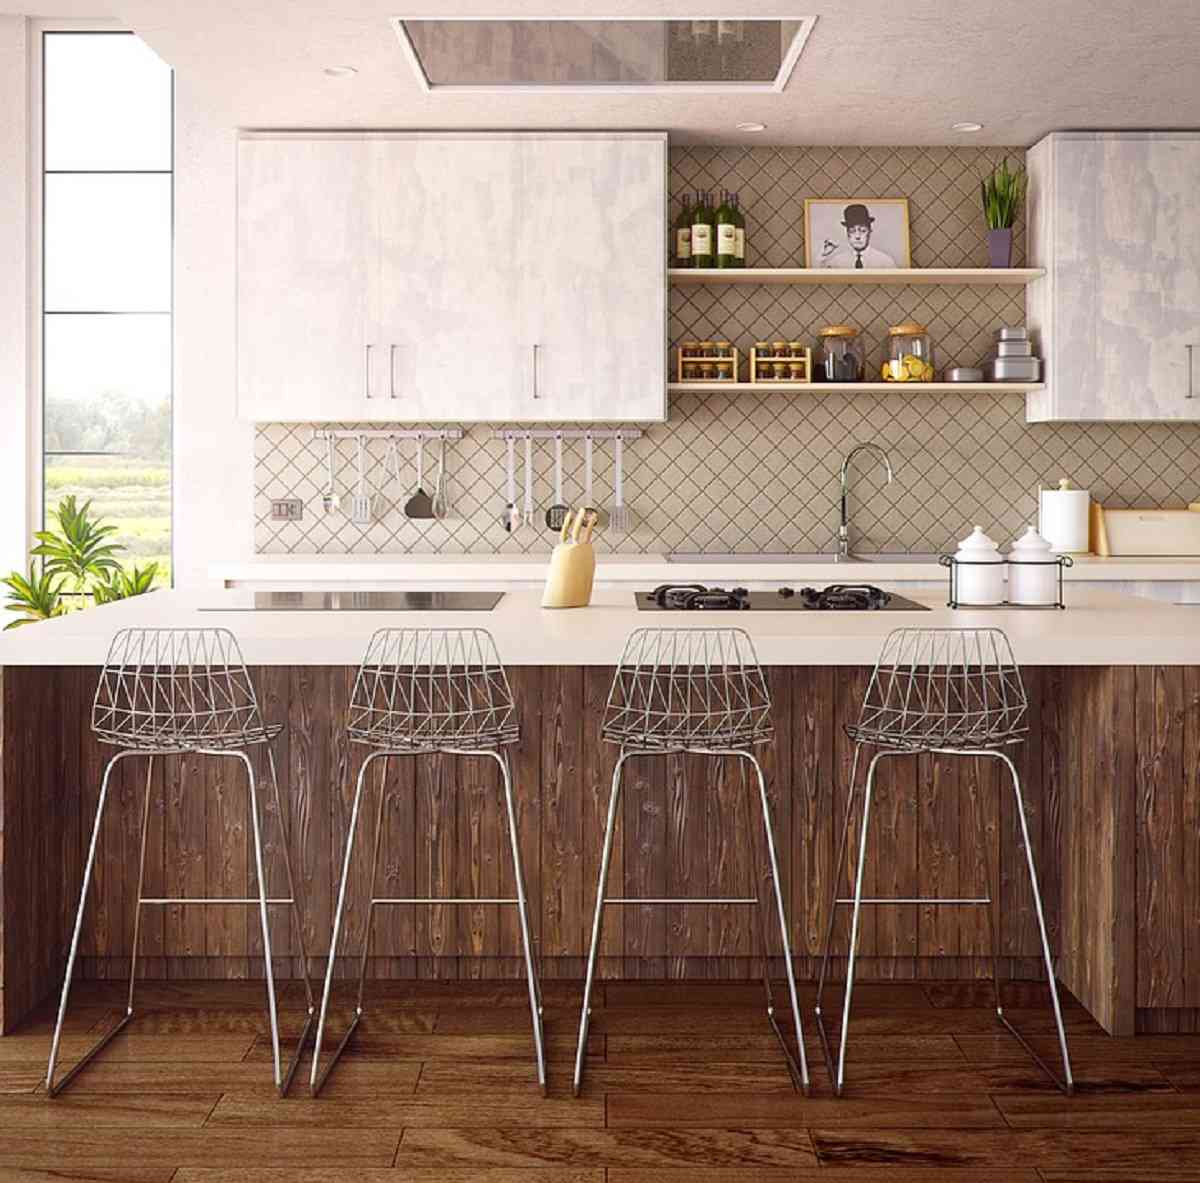 Decora las paredes de tu cocina y agrega un aspecto totalmente actualizado.